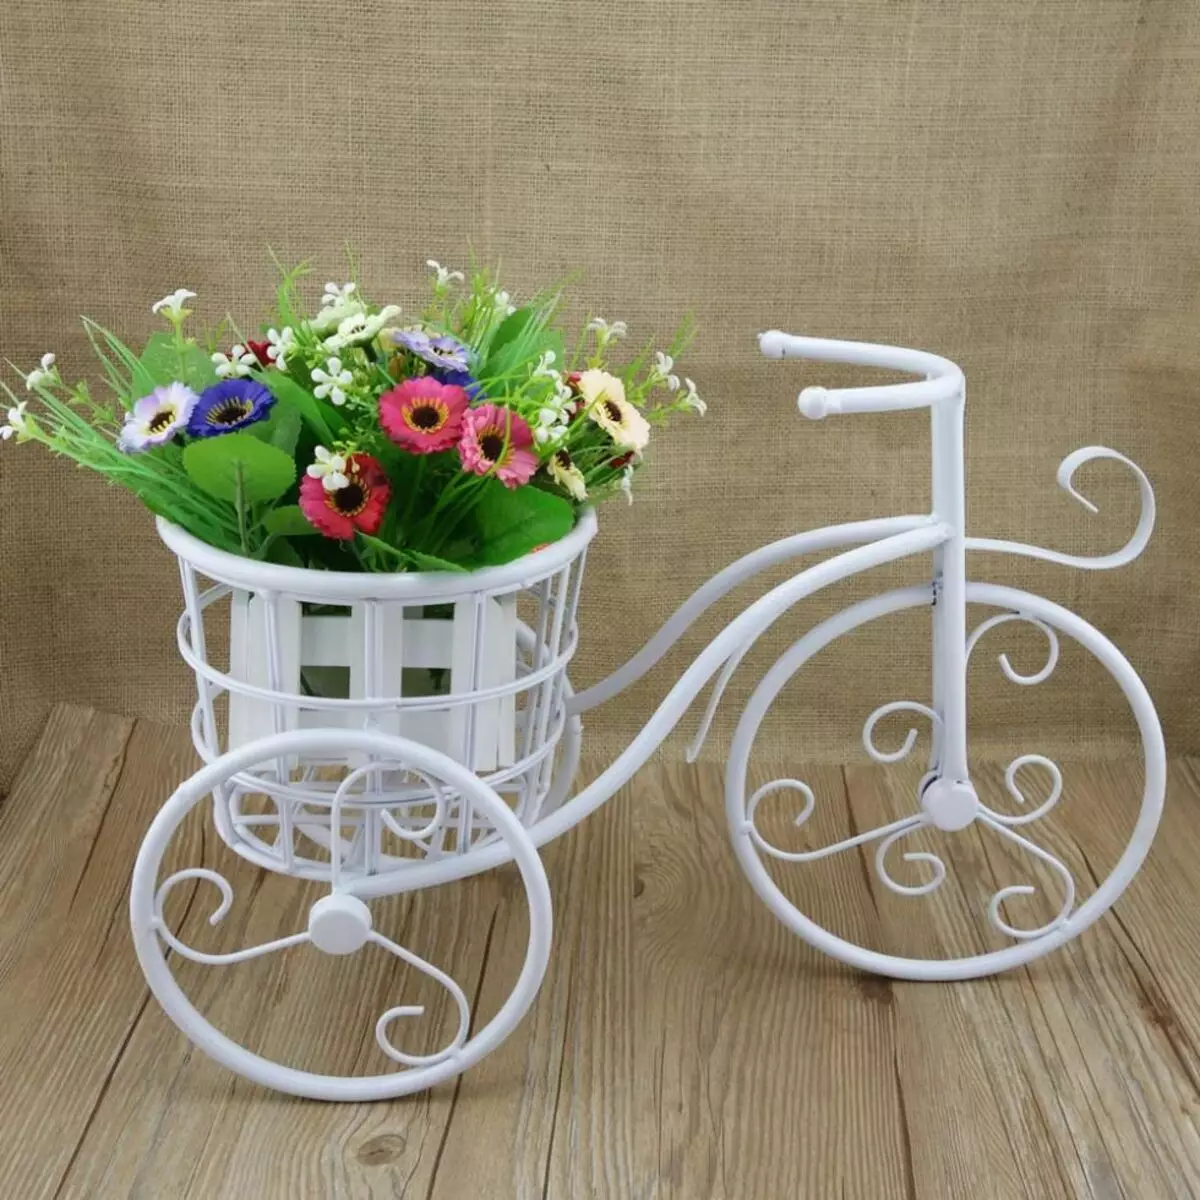 Stendas dviratis už gėlių: suklastotus modelius ir kakavos dviračius, grindų dekoratyvinį gėlių namus, medinius ir kitus gėlių dviračius 8458_4